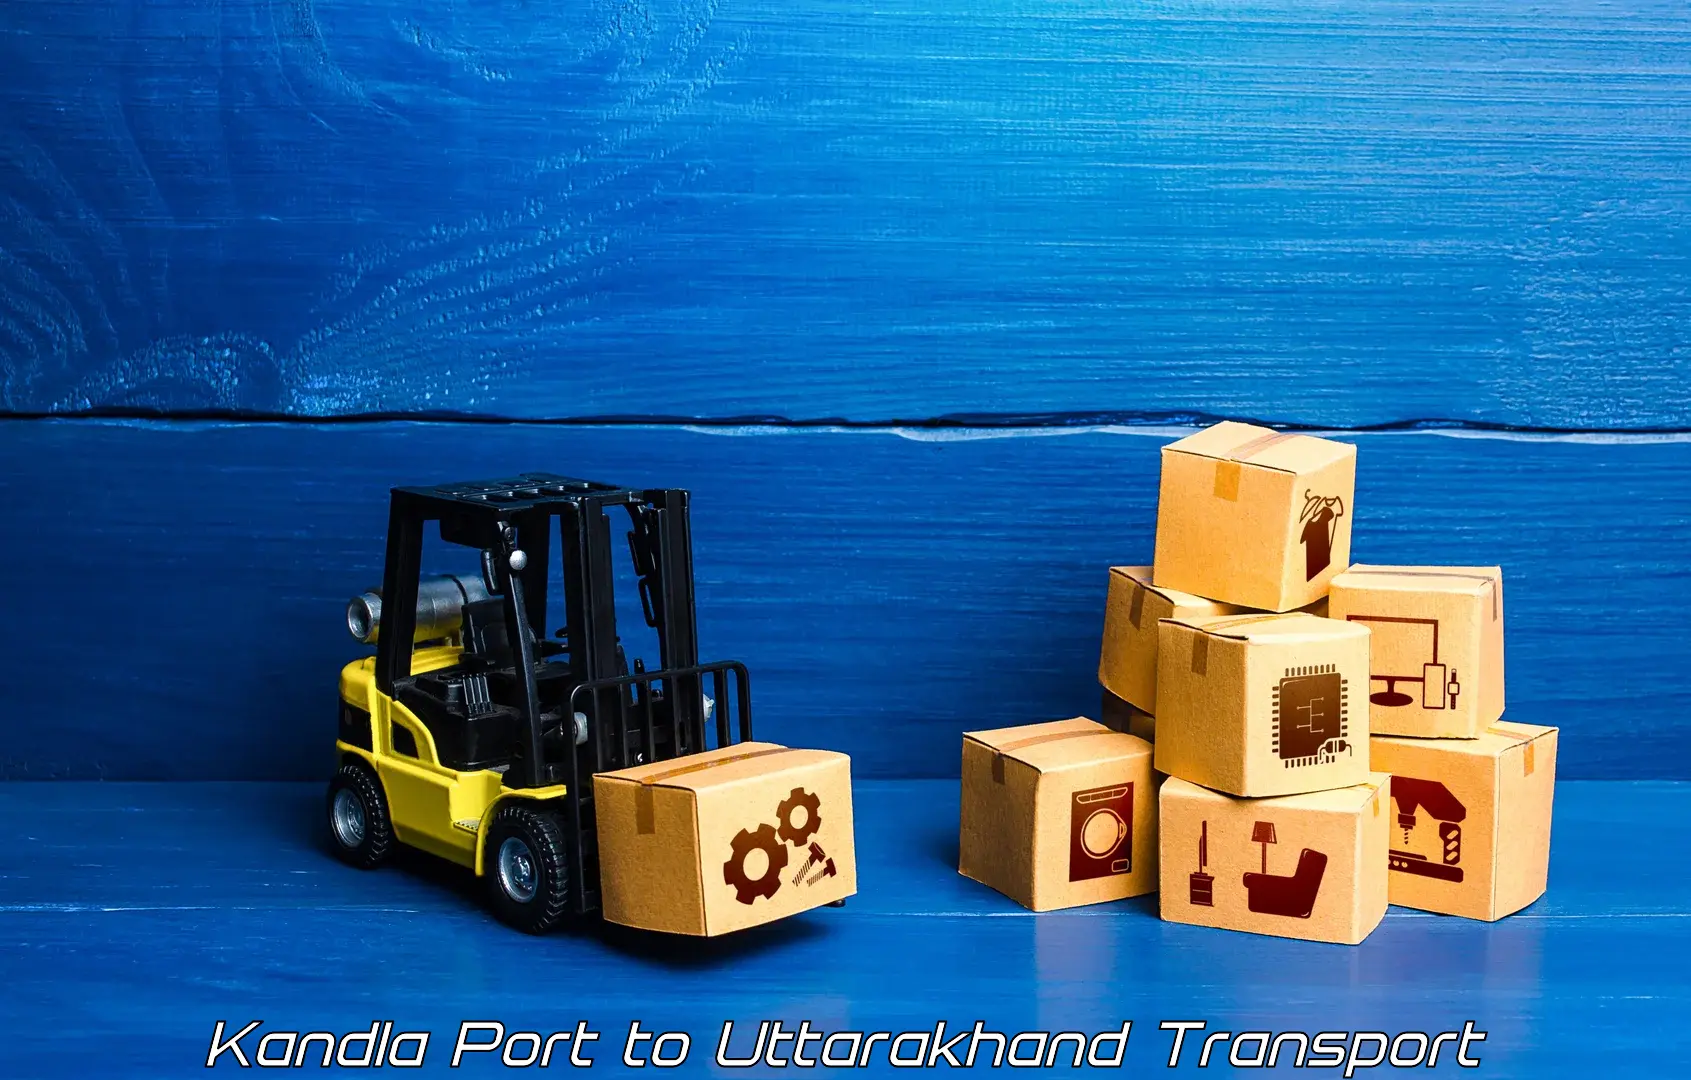 Shipping partner Kandla Port to Pithoragarh